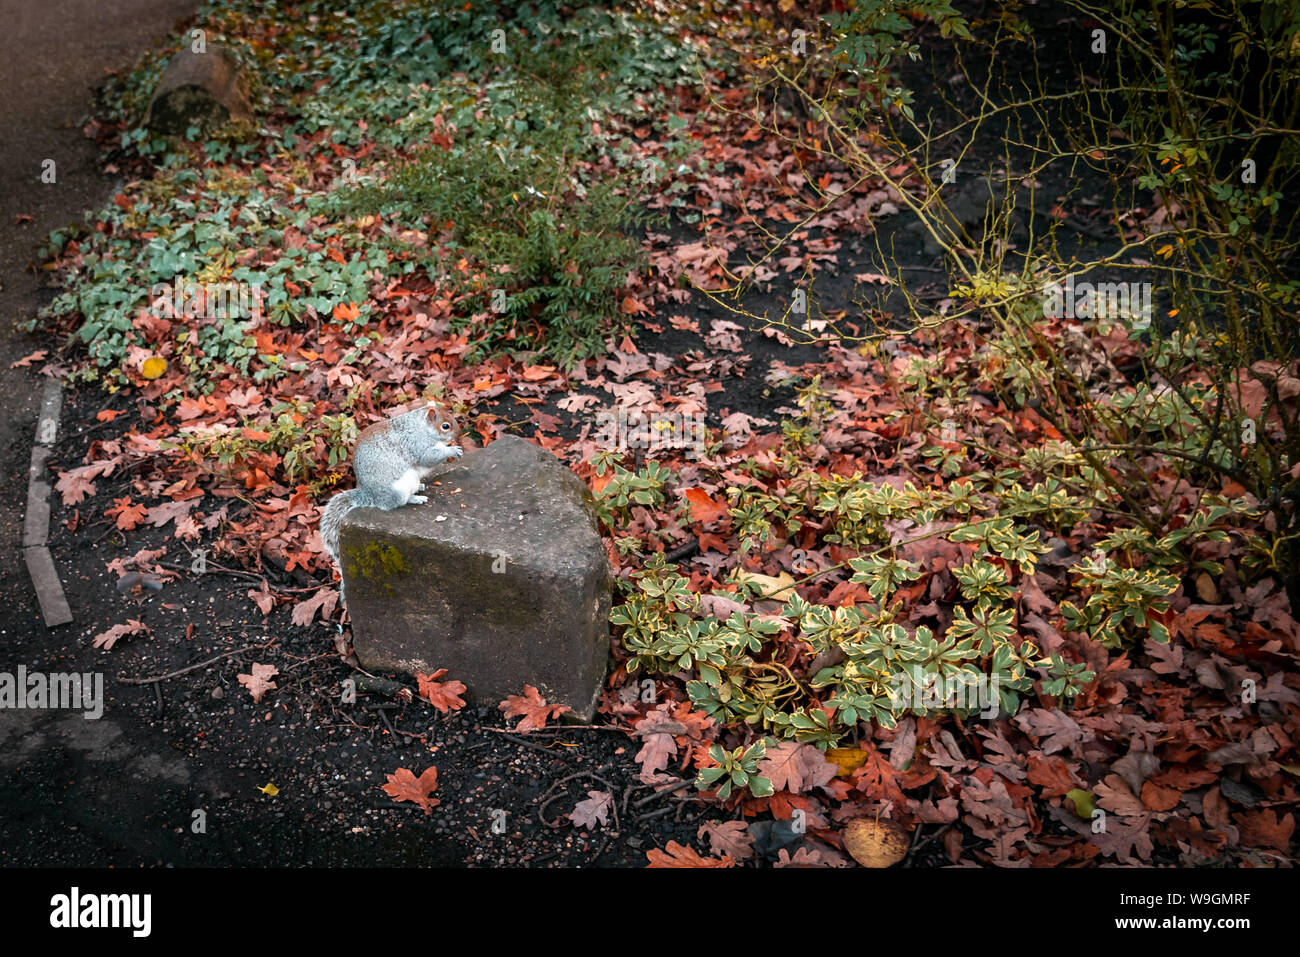 L'alimentation de l'écureuil dans une pierre entourée d'espaces verts et sécher les feuilles d'automne Banque D'Images